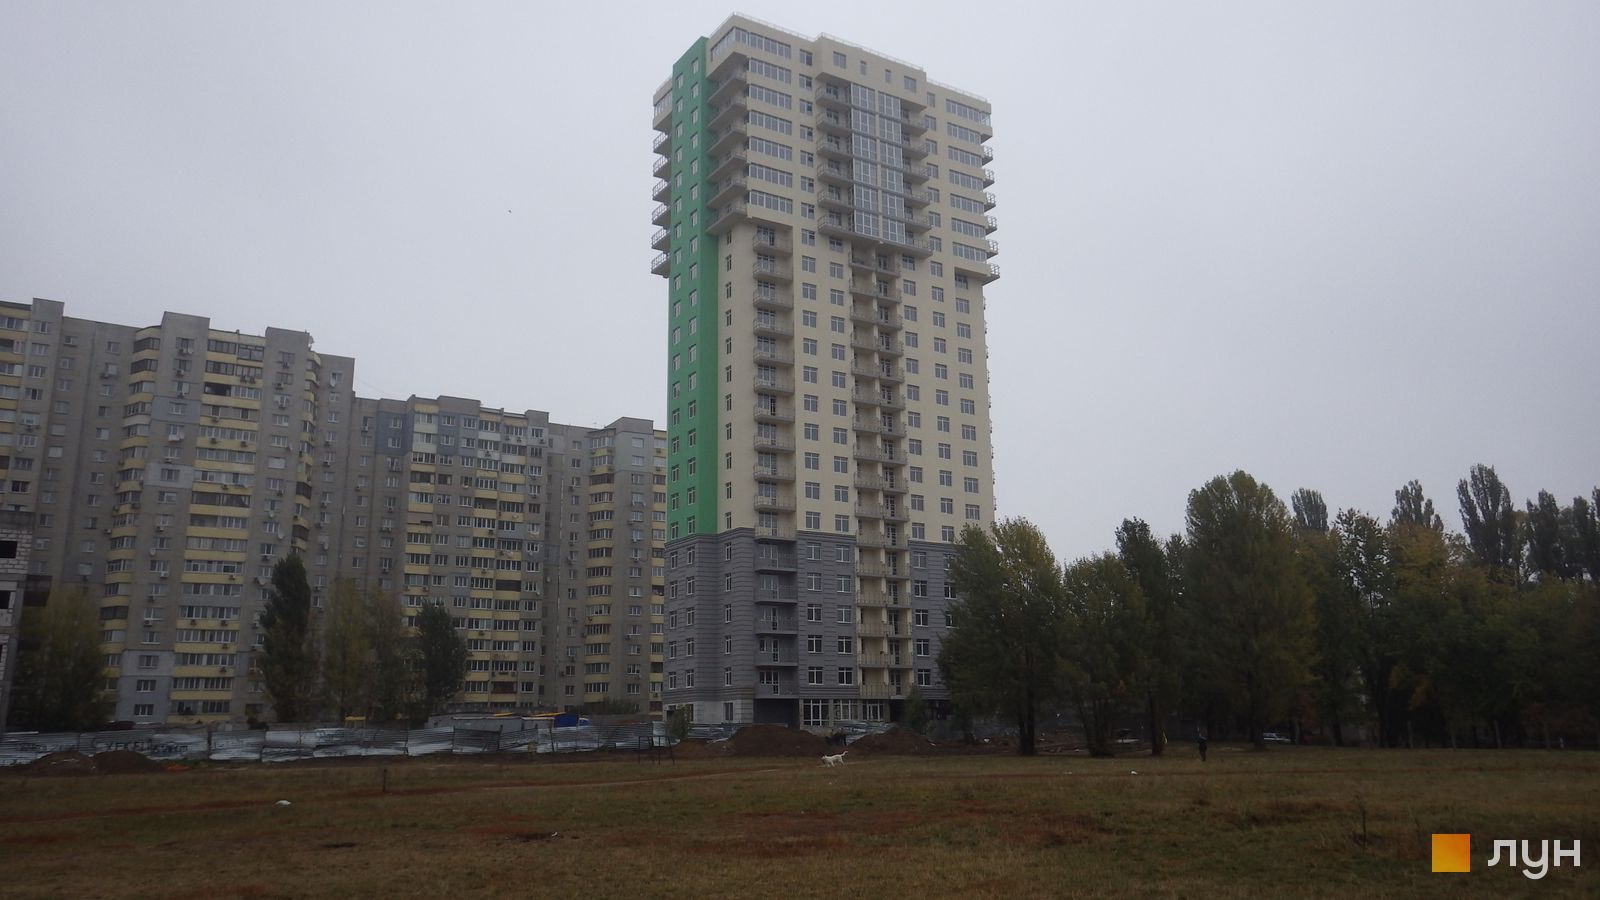 Моніторинг будівництва ЖК Столичні каштани - Ракурс 6, жовтень 2015